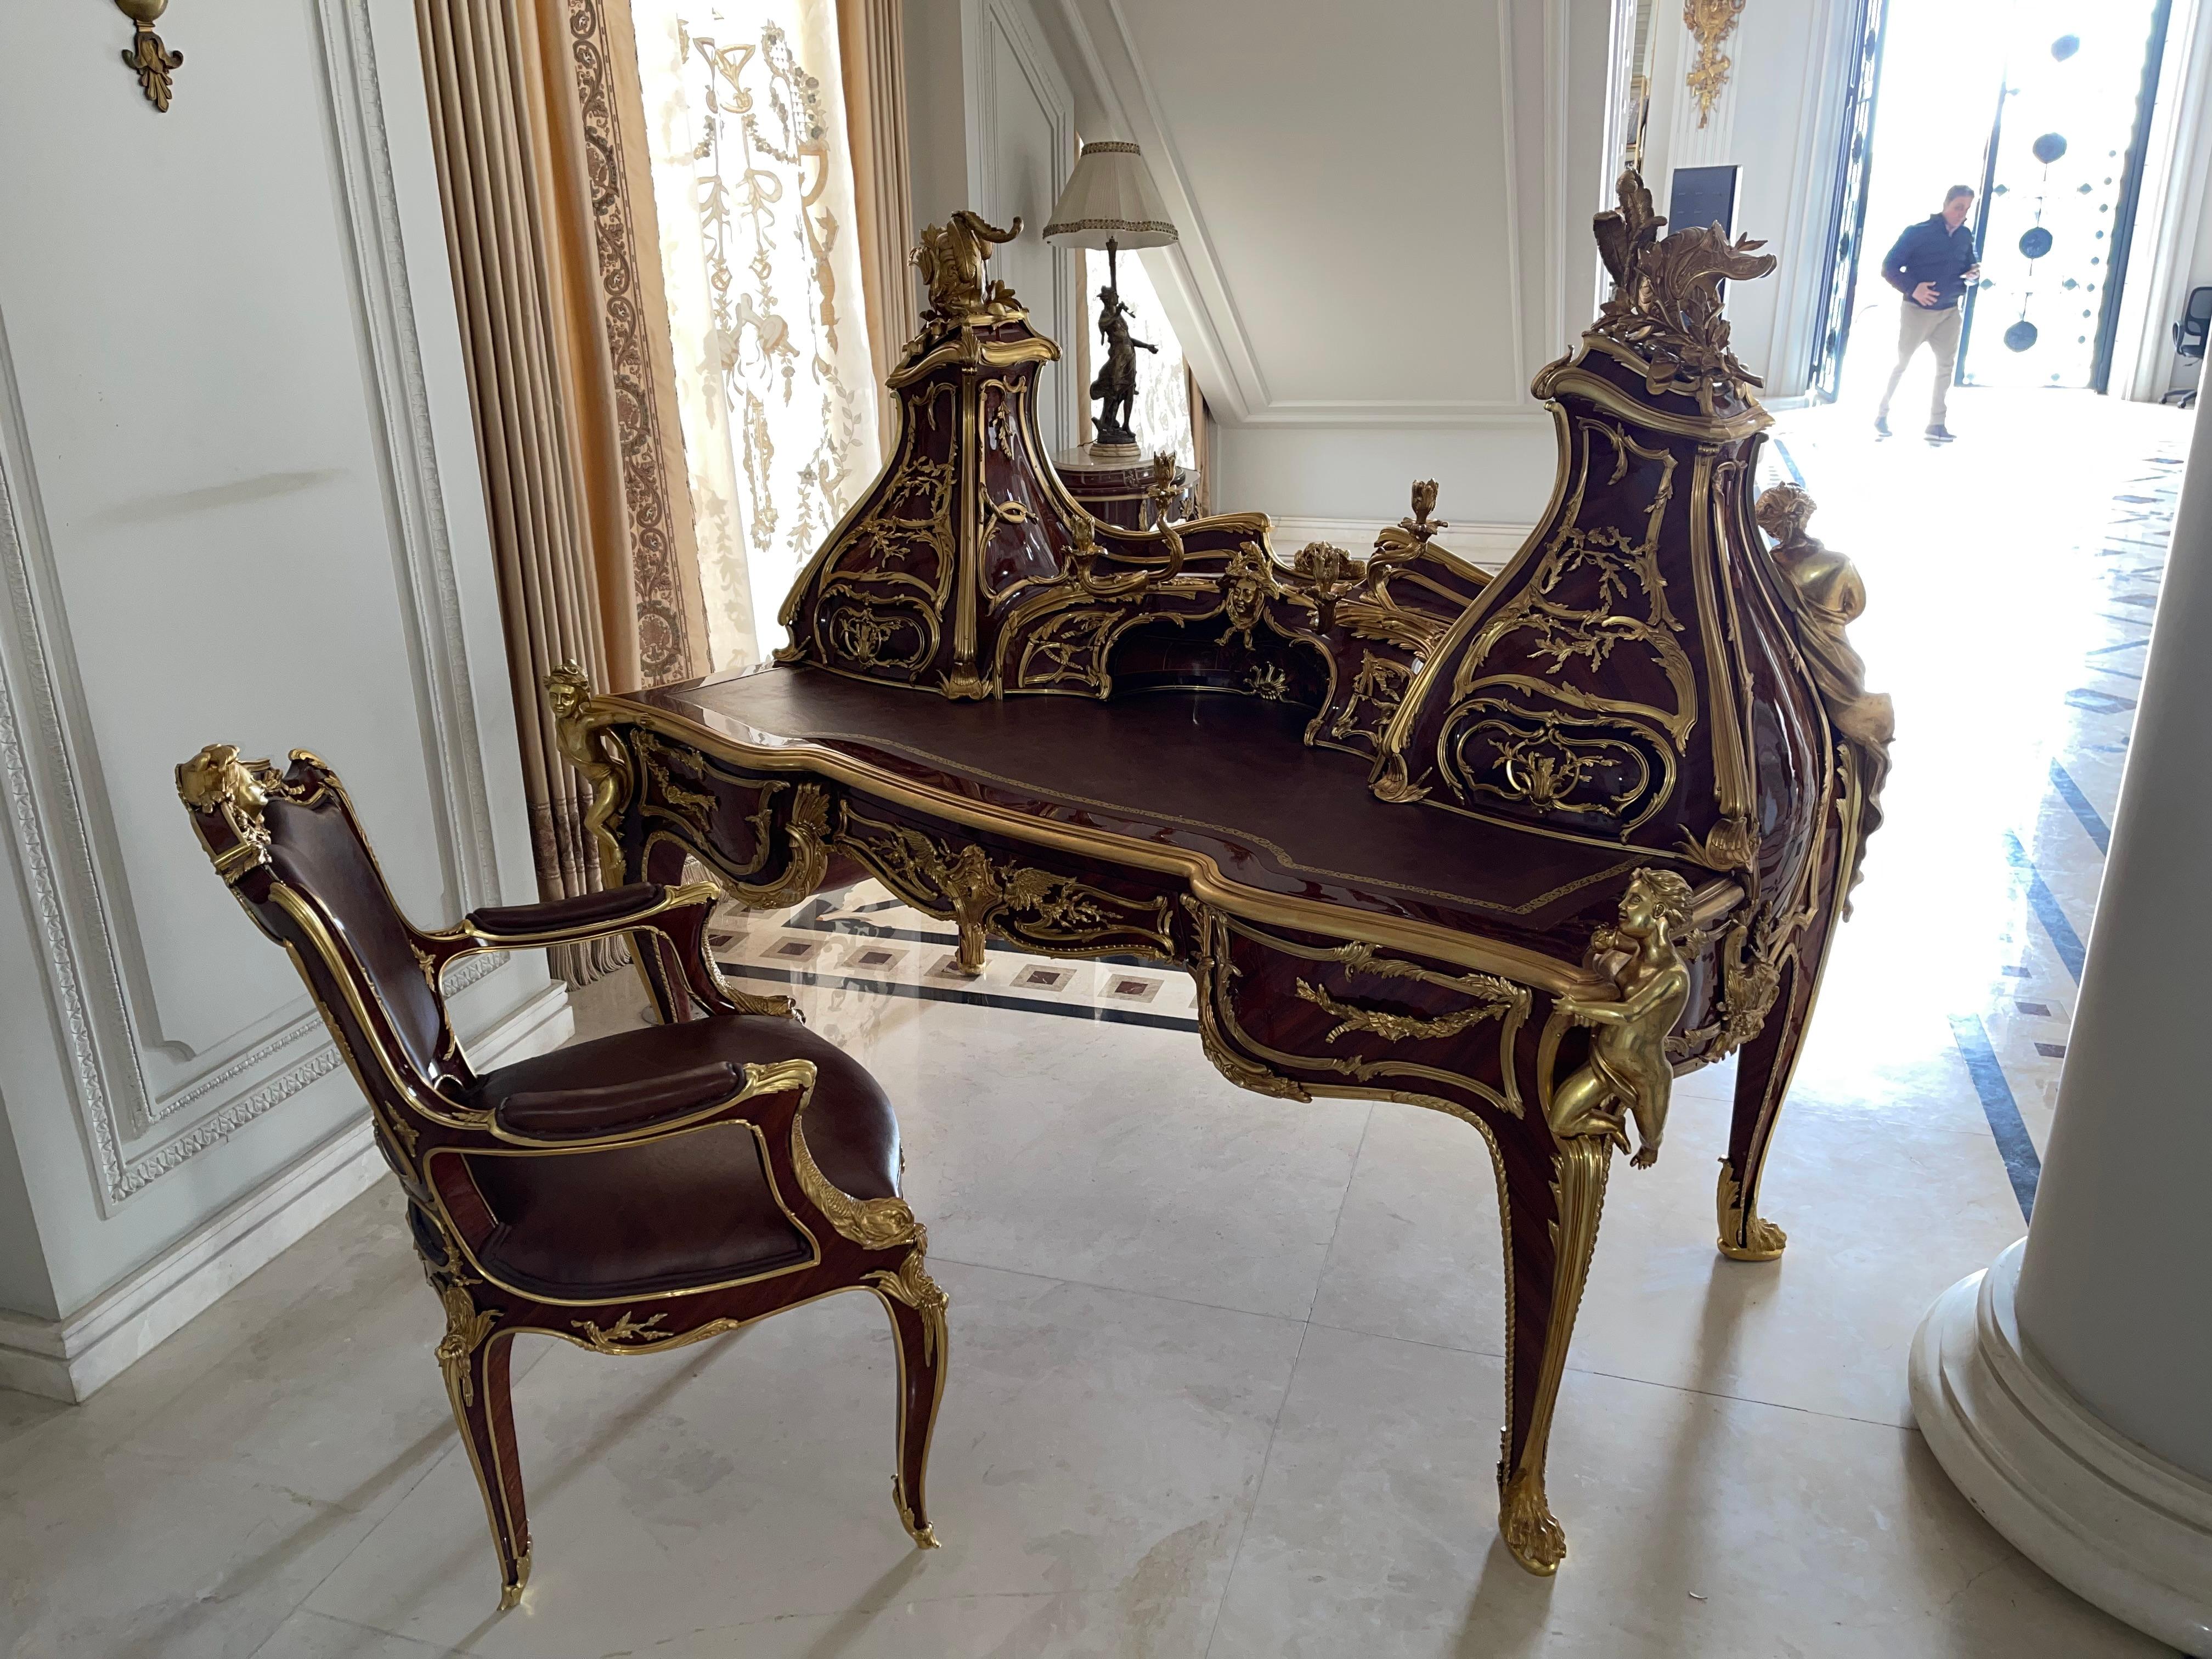 Prächtige große Kommode/Schreibtisch Louis XV, nach Francois Linke

Der Schreibtisch hat ein geschätztes Gesamtgewicht von ca. 450 kg, Bronzegewicht ca. 250 kg.
Massivholz Buche und furniert. Massive Bonze, feuervergoldet und fein